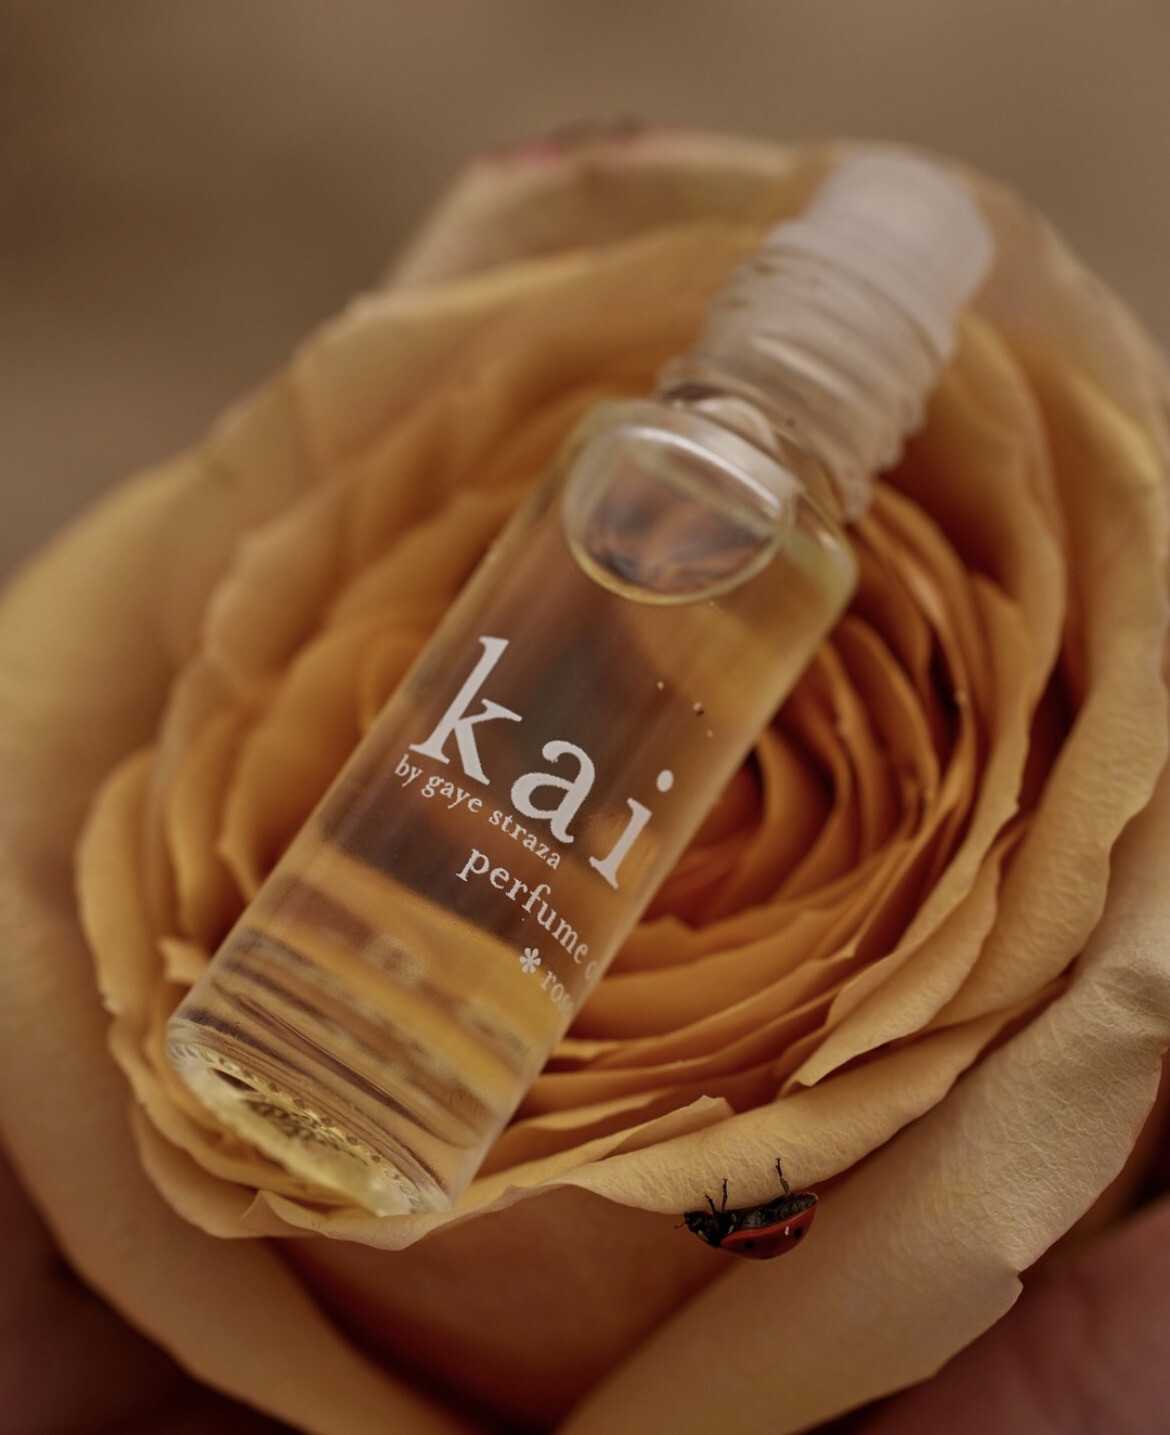 Kai Rose Roll On Perfume 1.8 oz